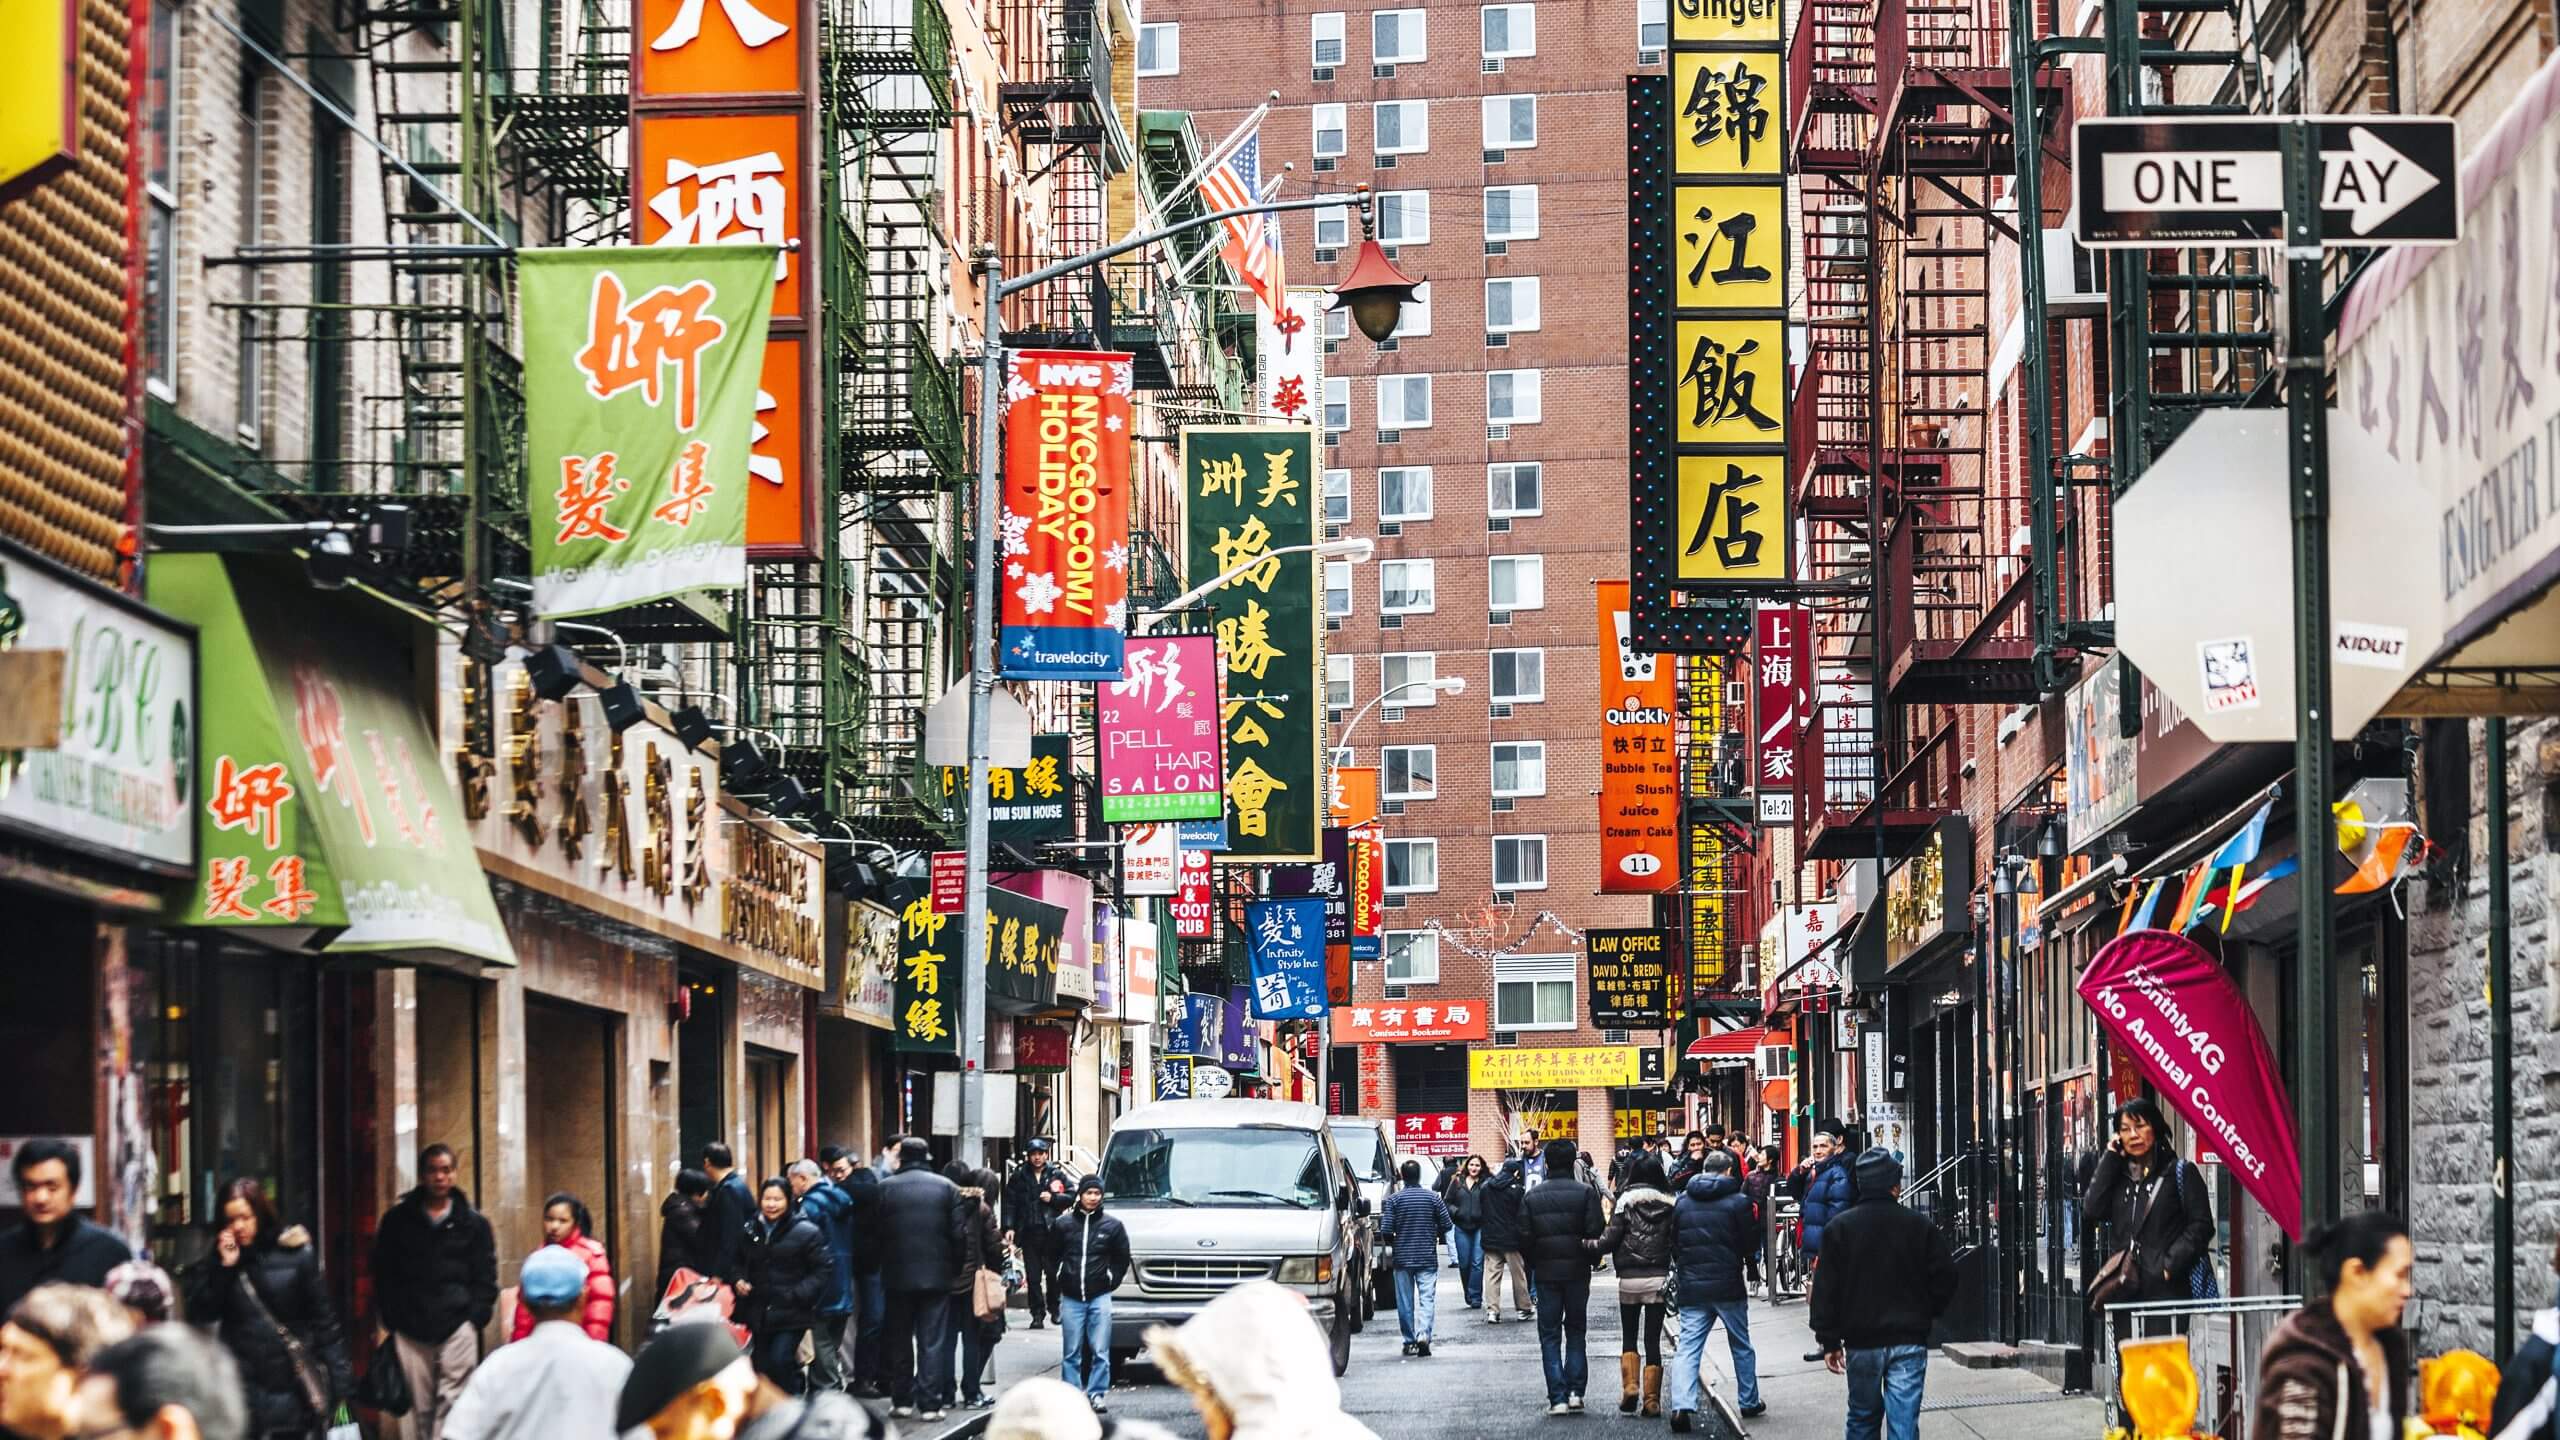 Chinatown street view